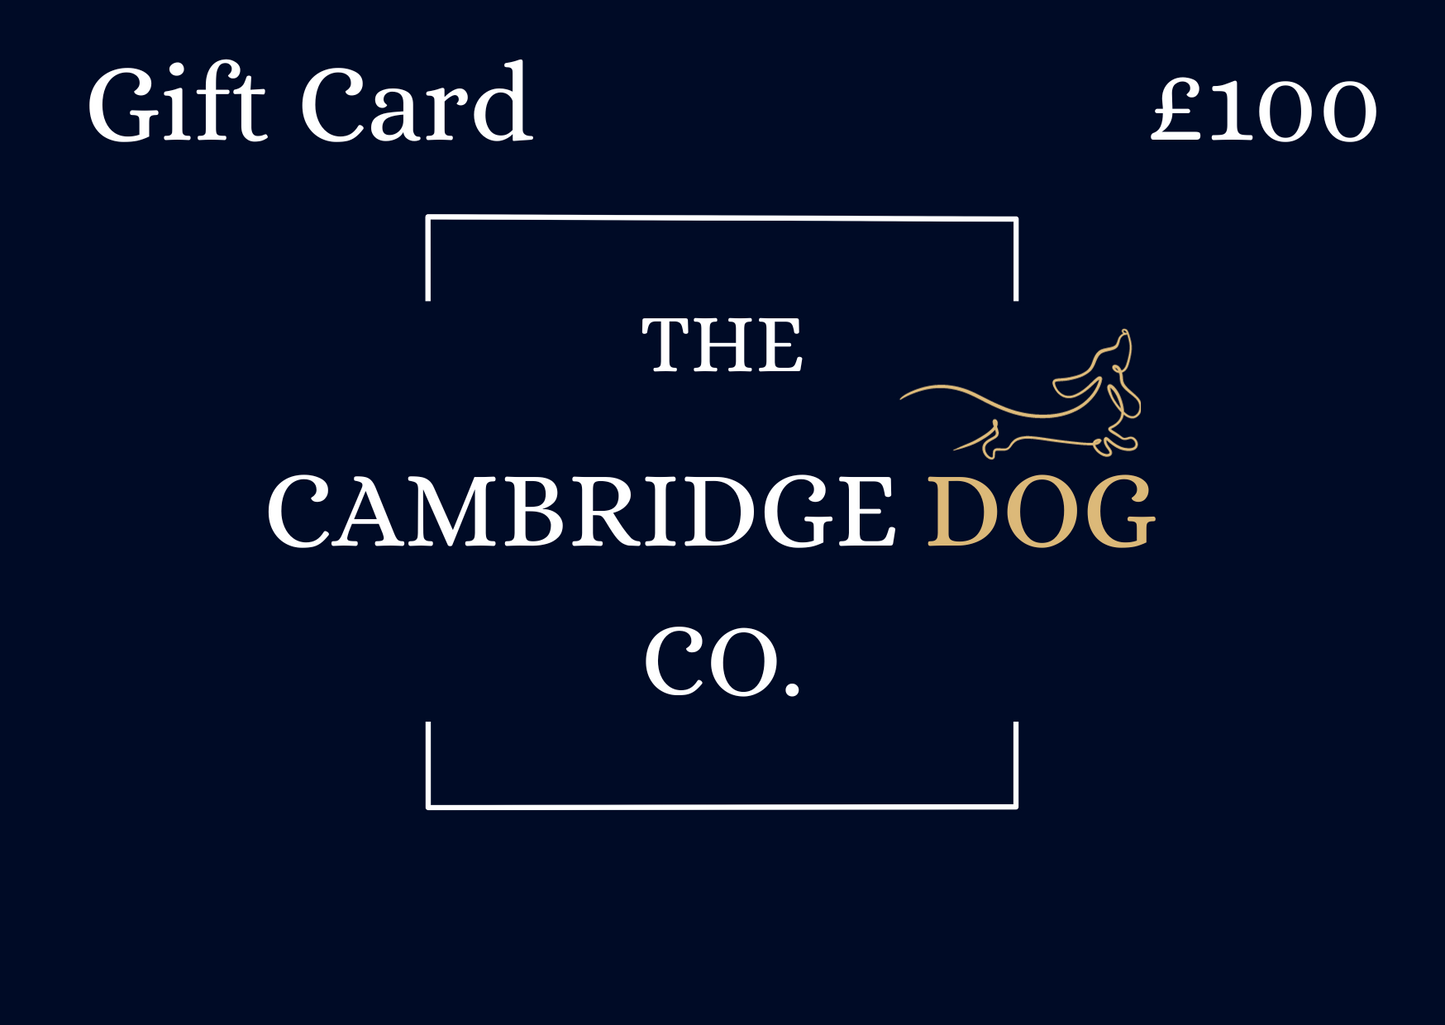 The Cambridge Dog Co.